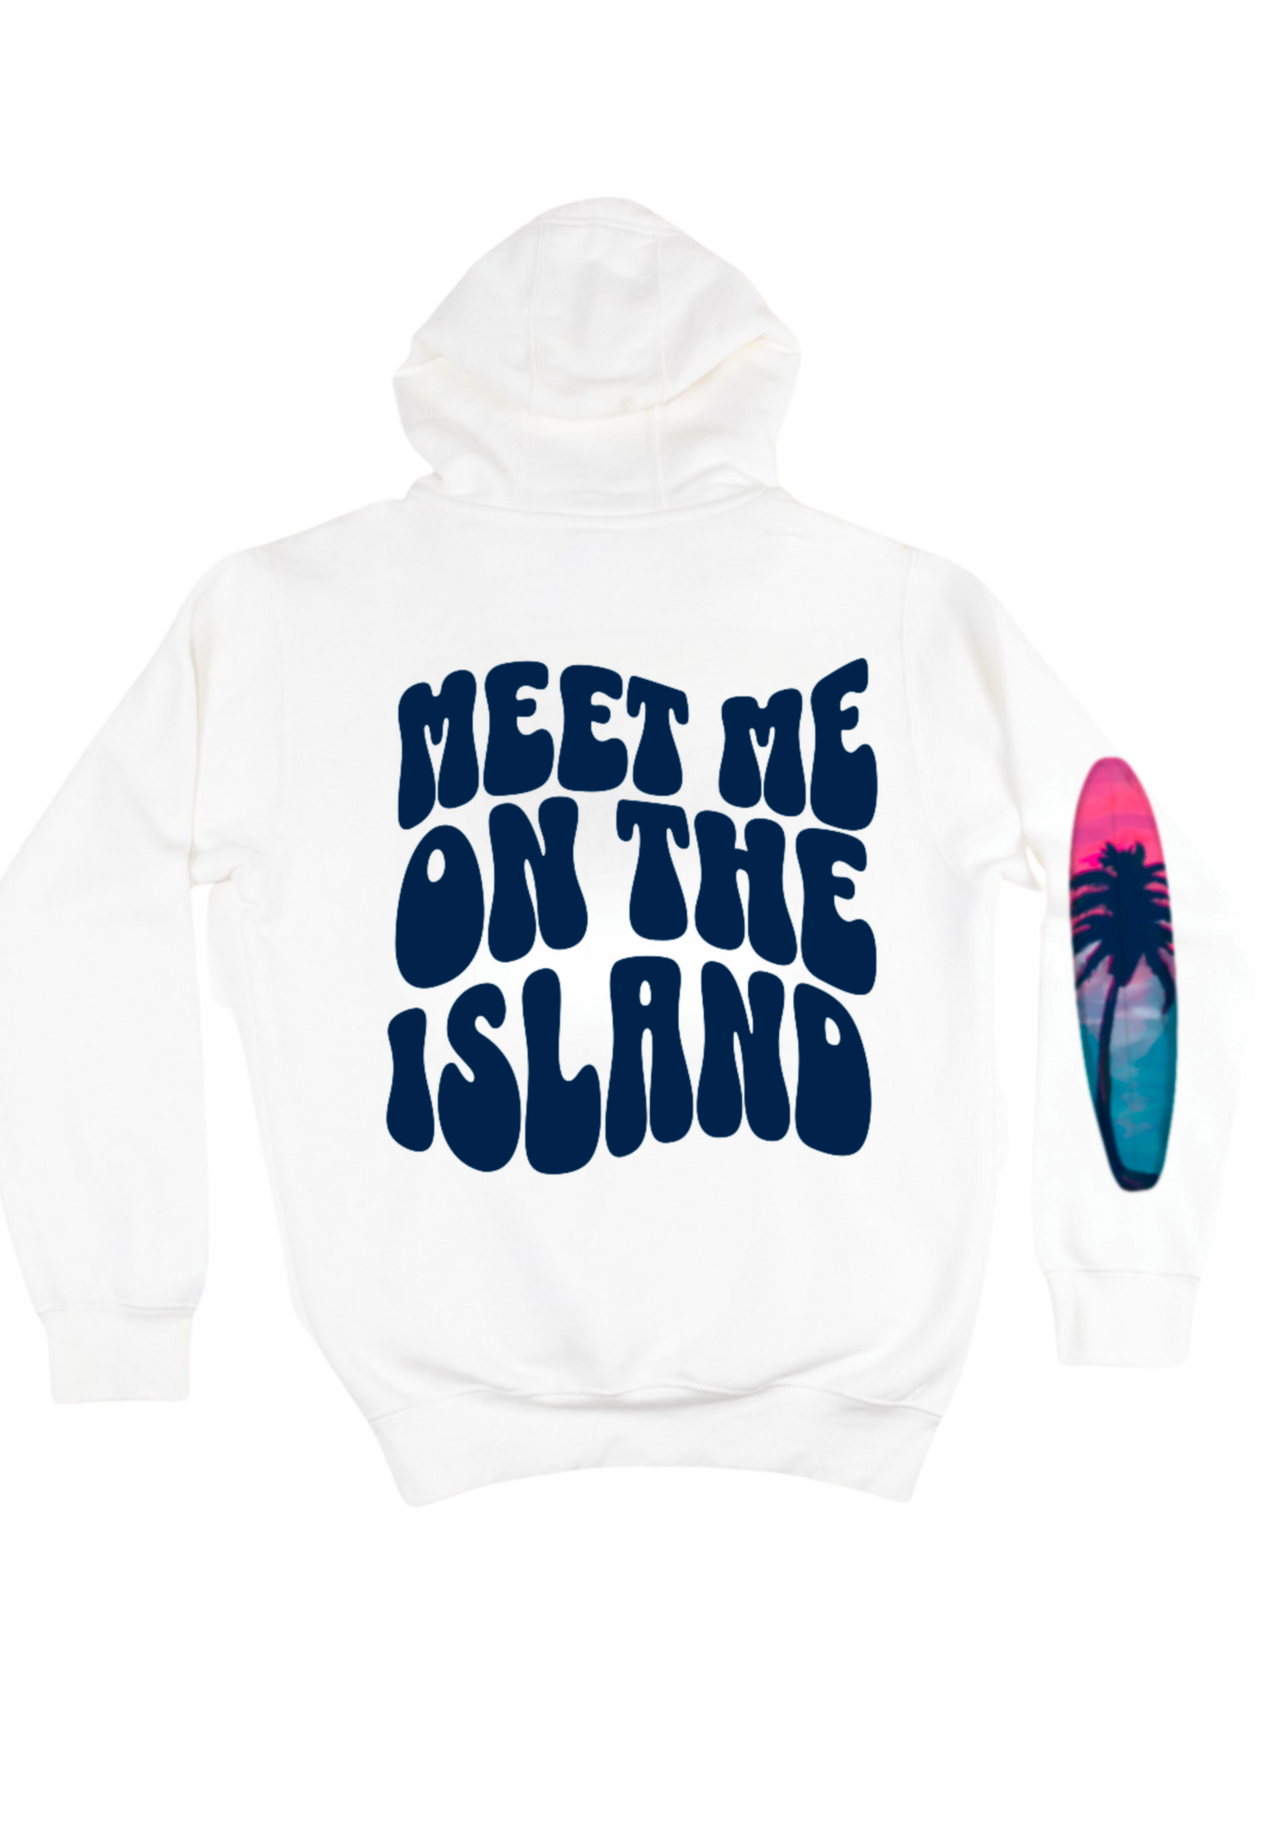 Meet Me on the Island Hoodie